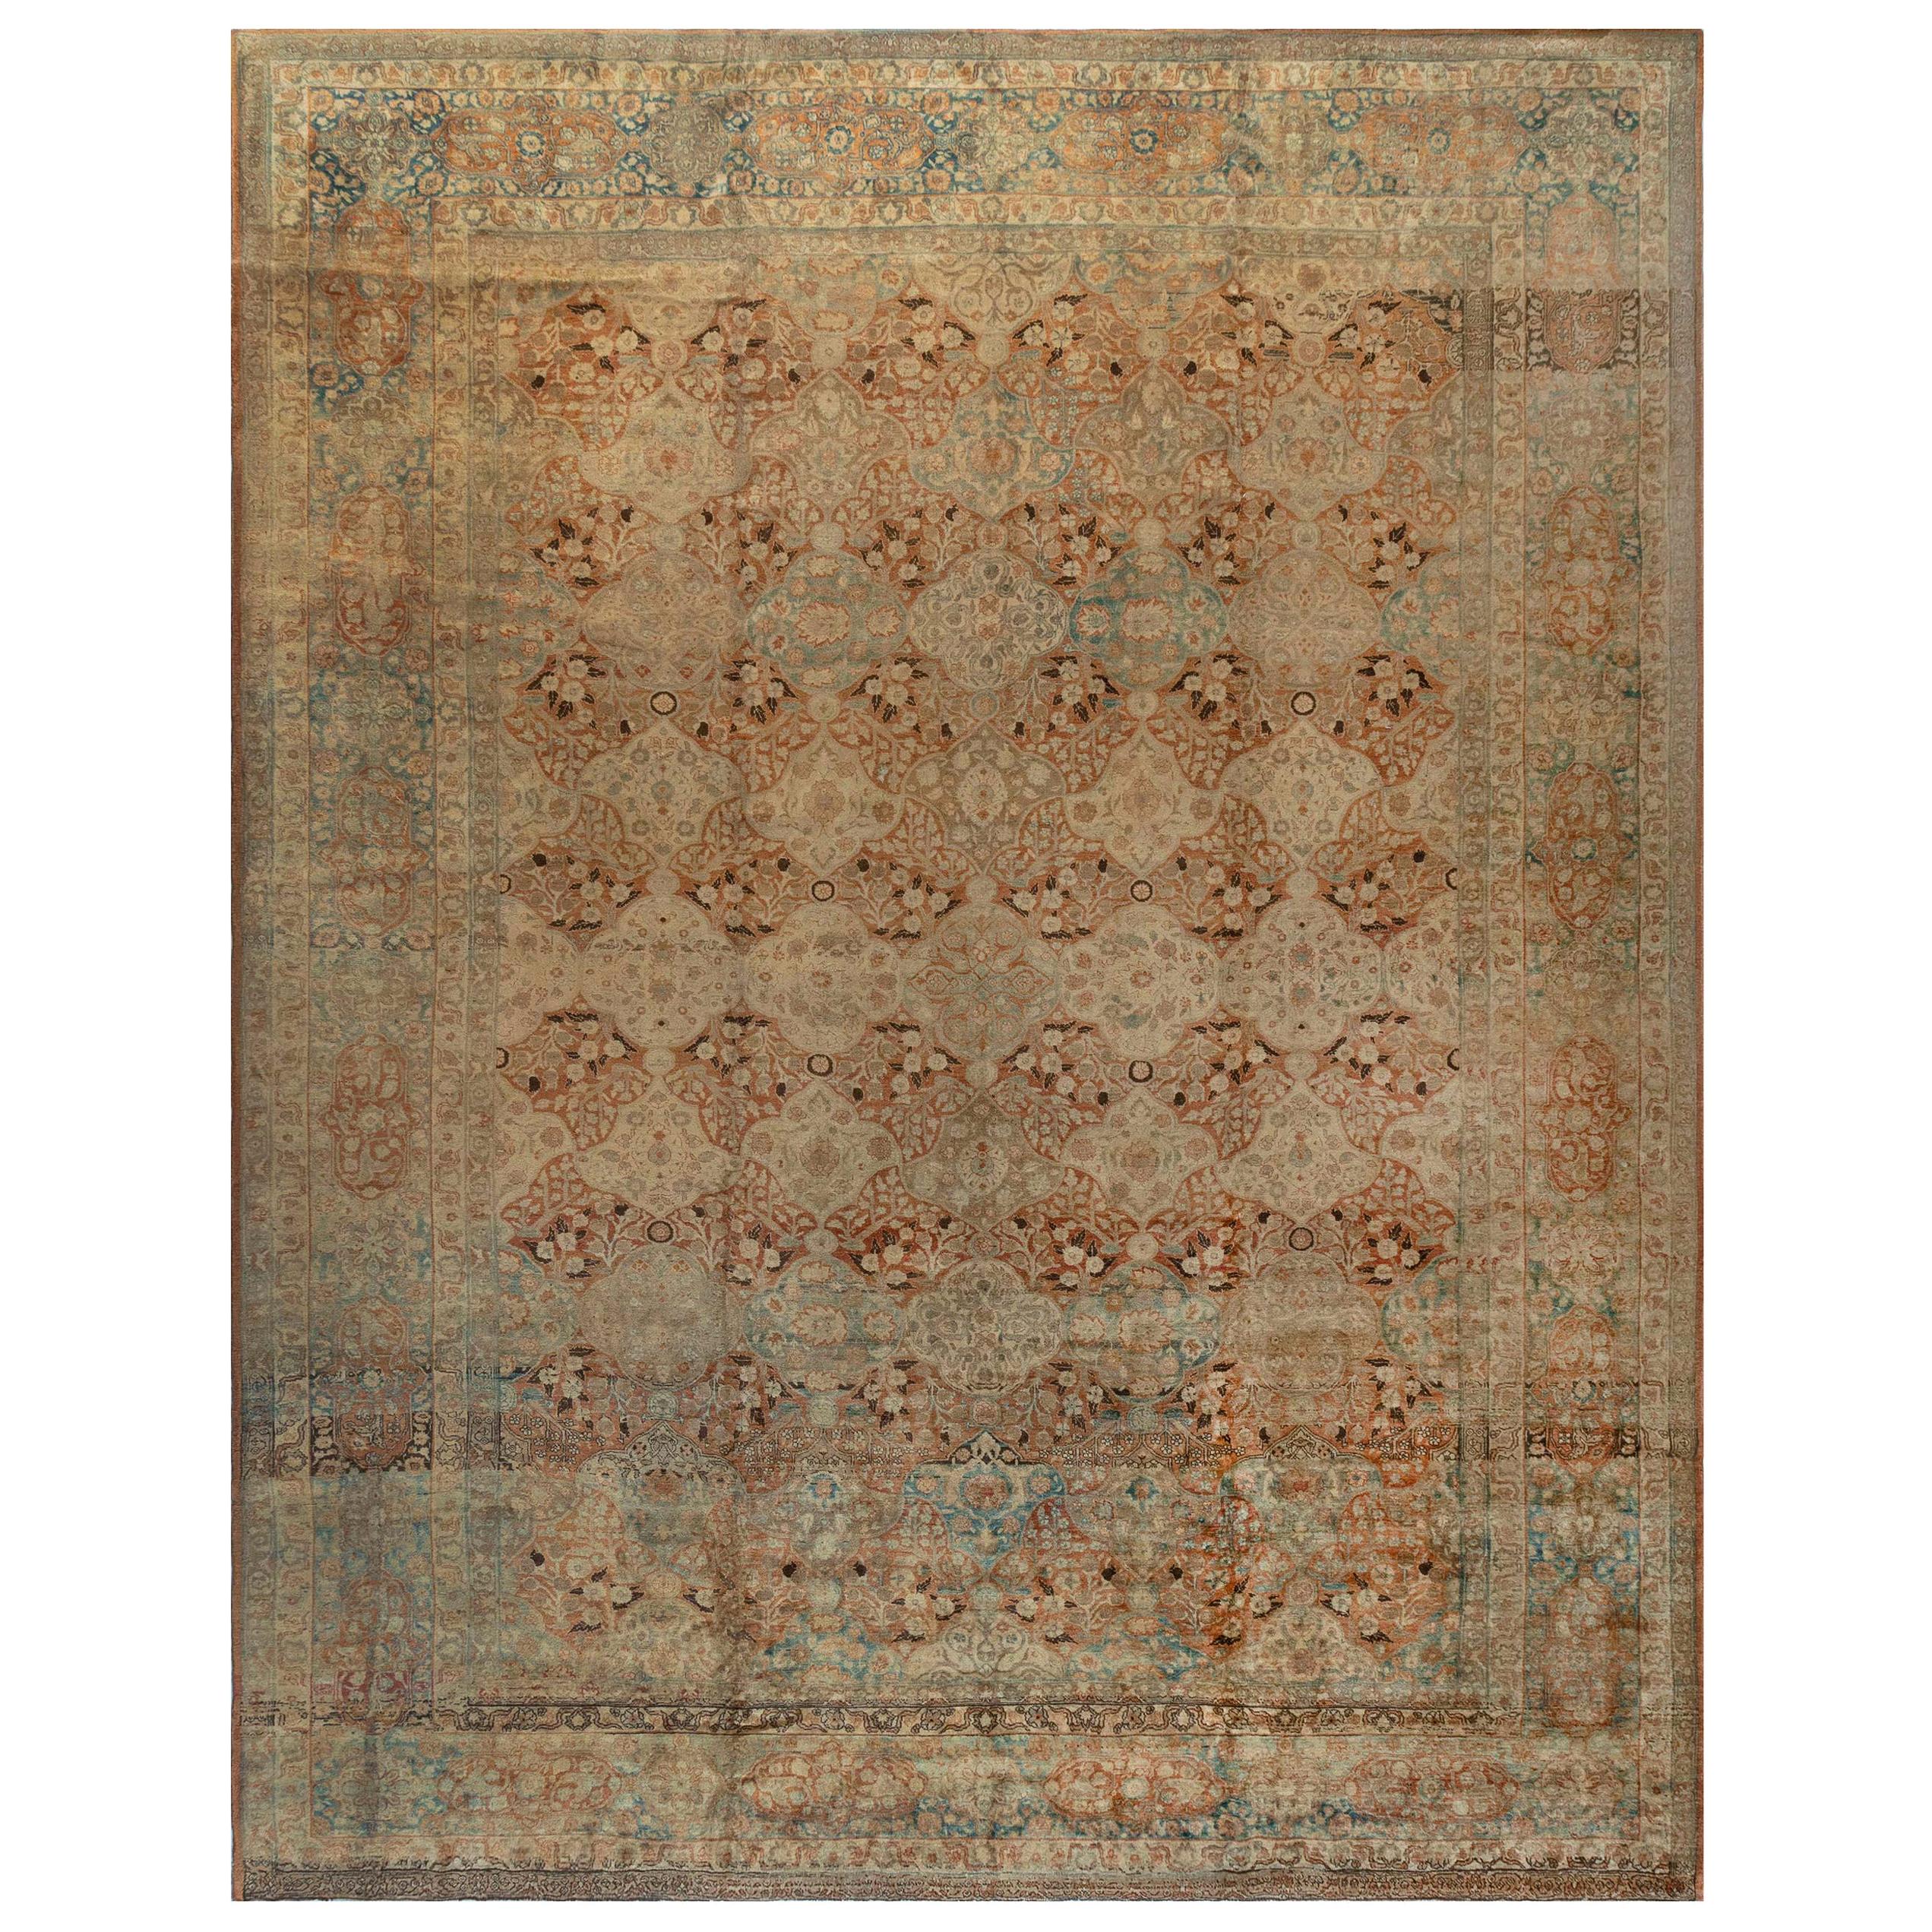 Authentique tapis persan Tabriz du 19e siècle